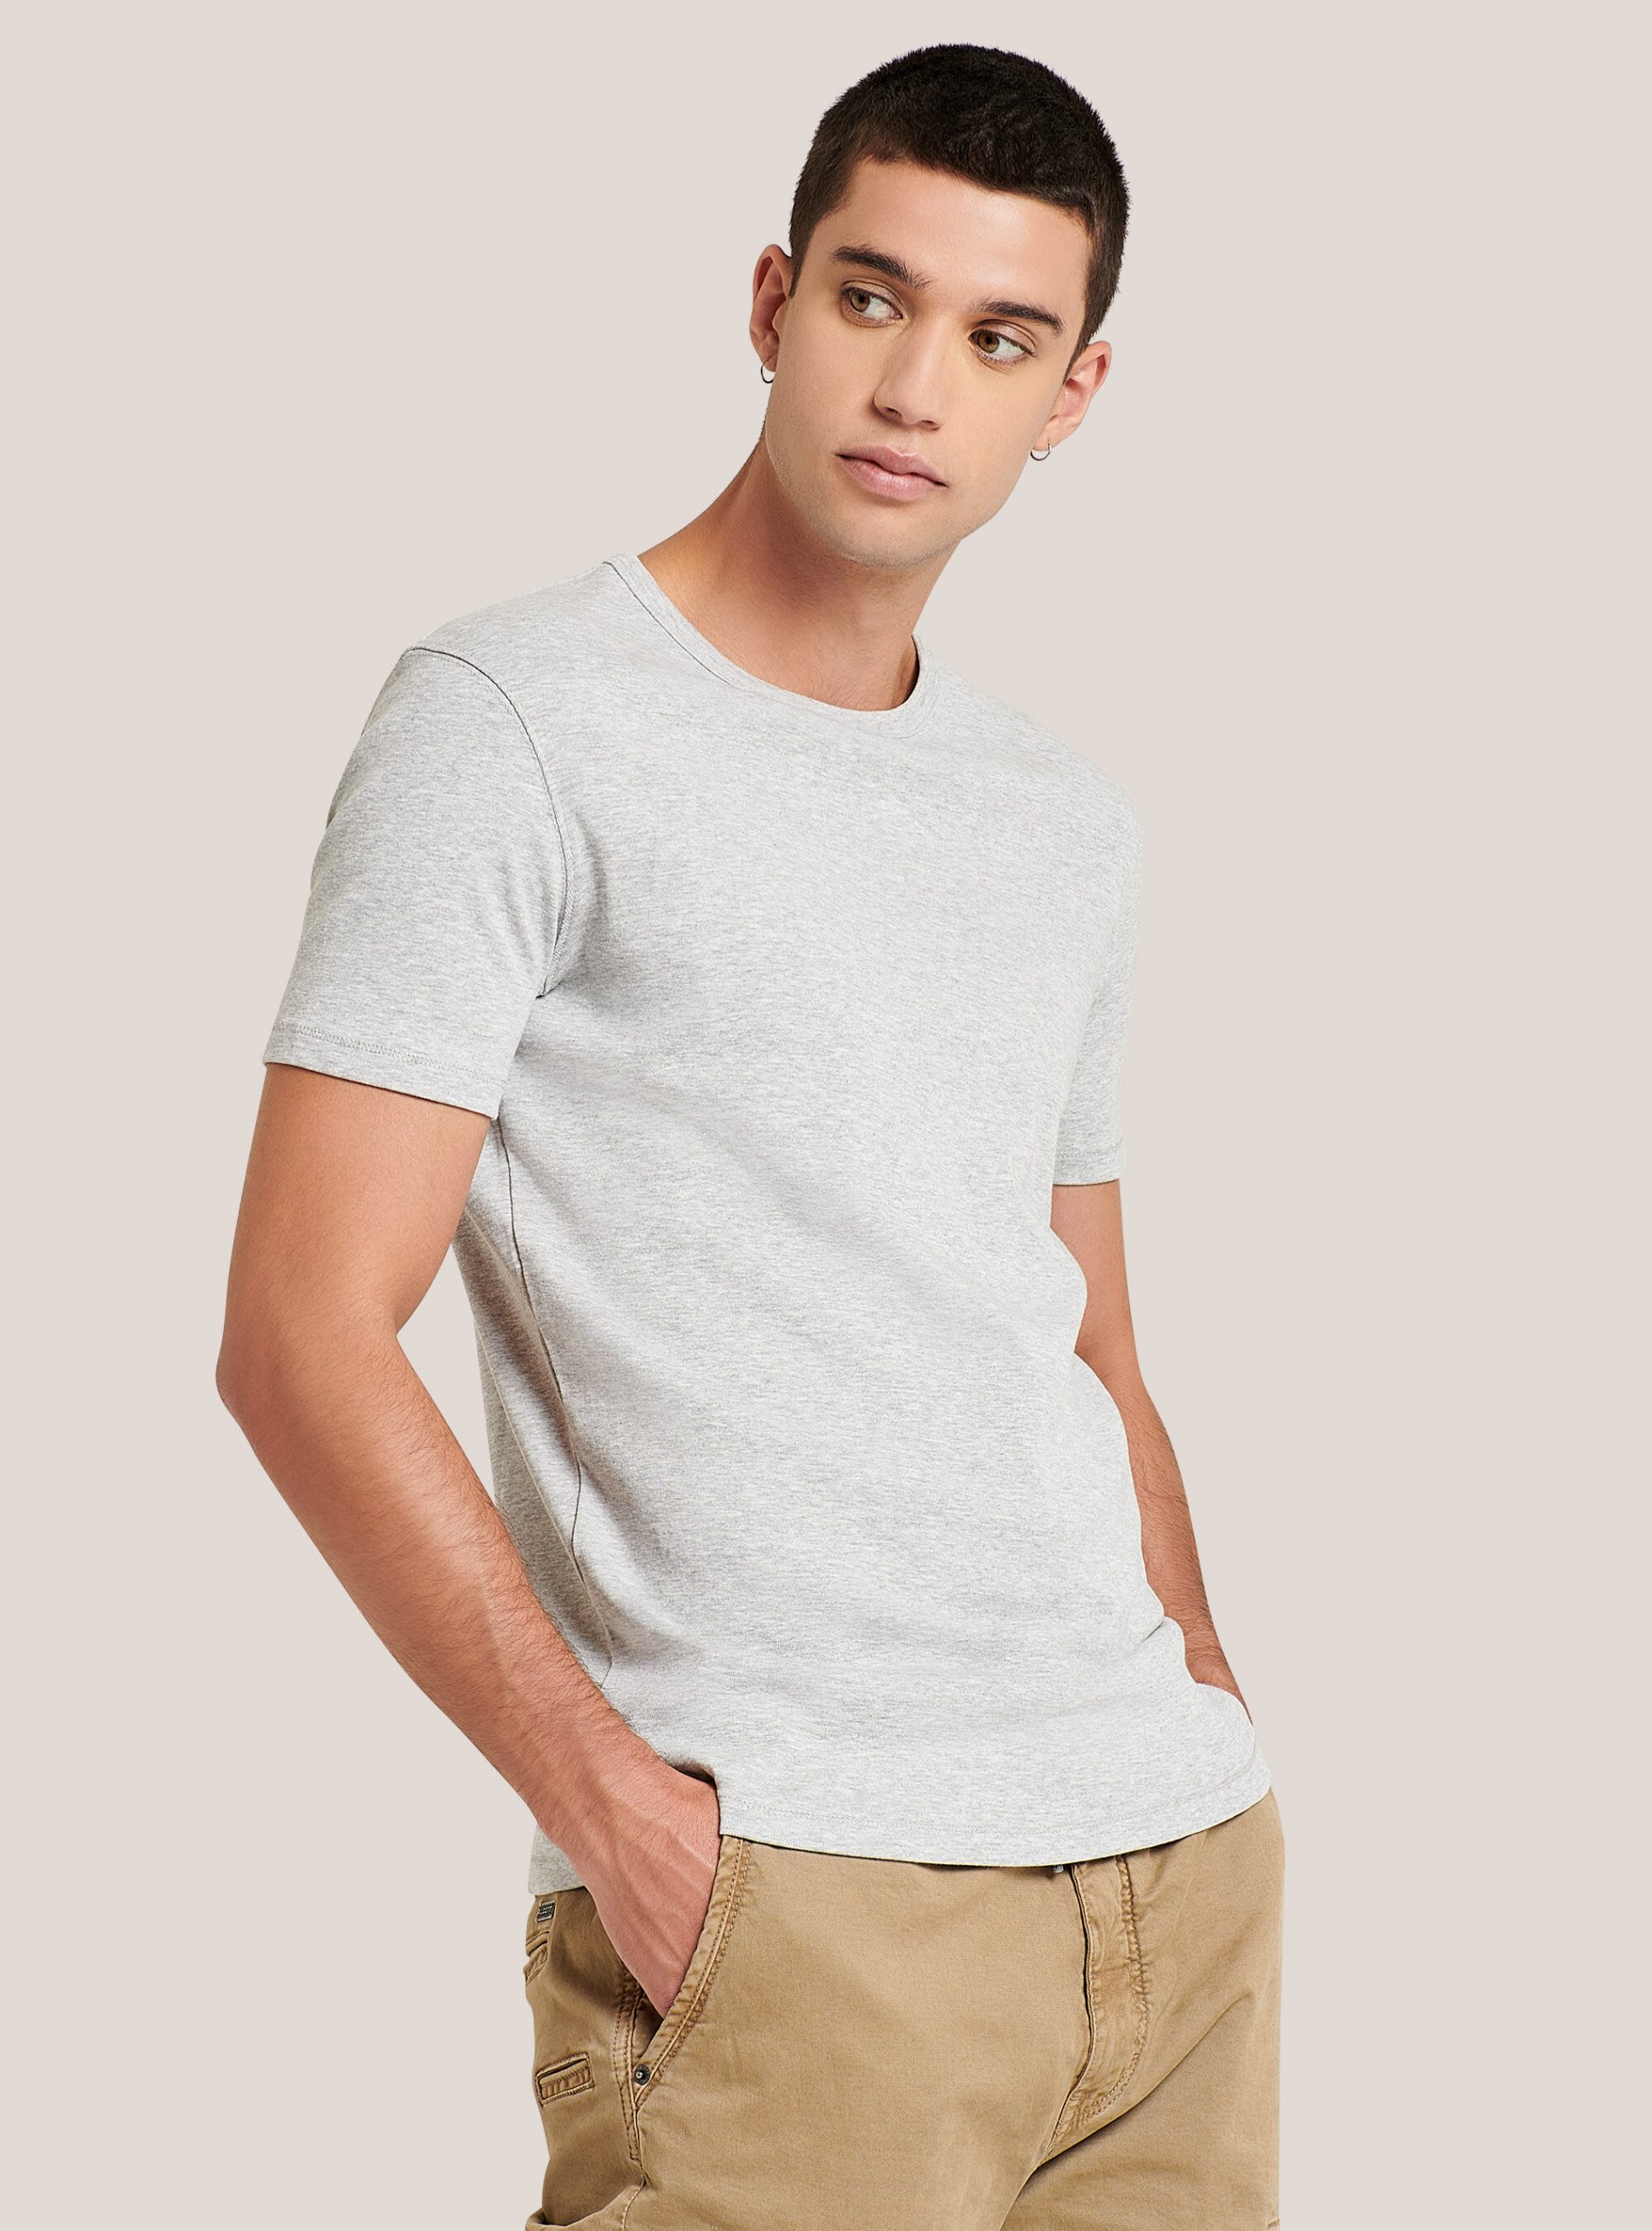 Einfarbiges Basic-T-Shirt Mit Rundhalsausschnitt Alcott T-Shirts C143 Light Grey M Männer Popularität – 1